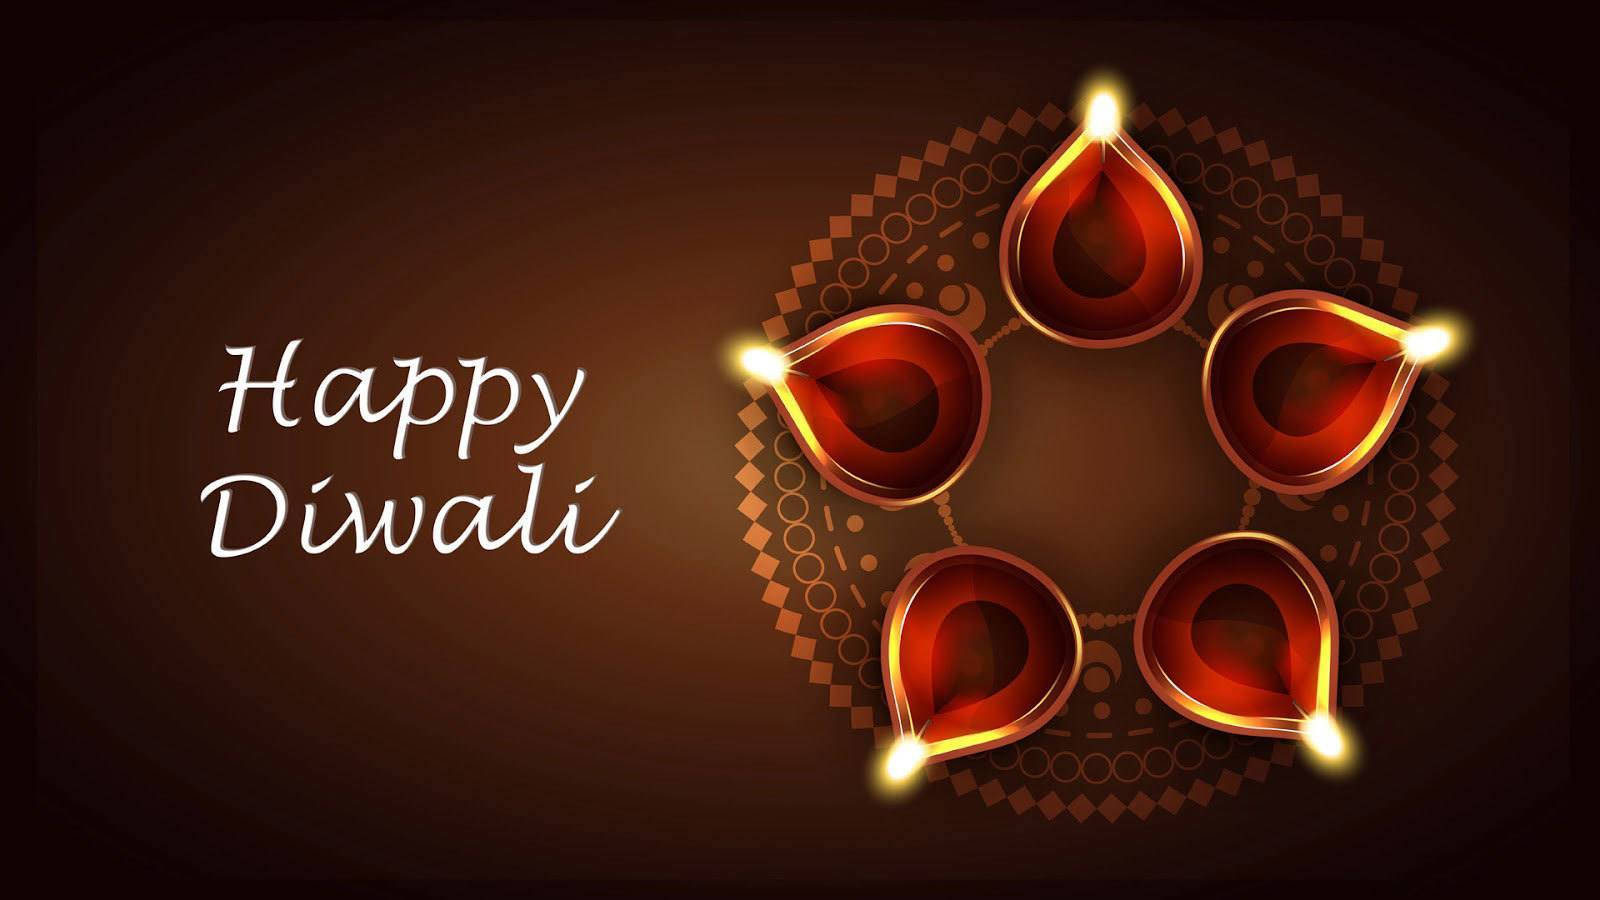 sGlade Diwali lanterner Wallpaper